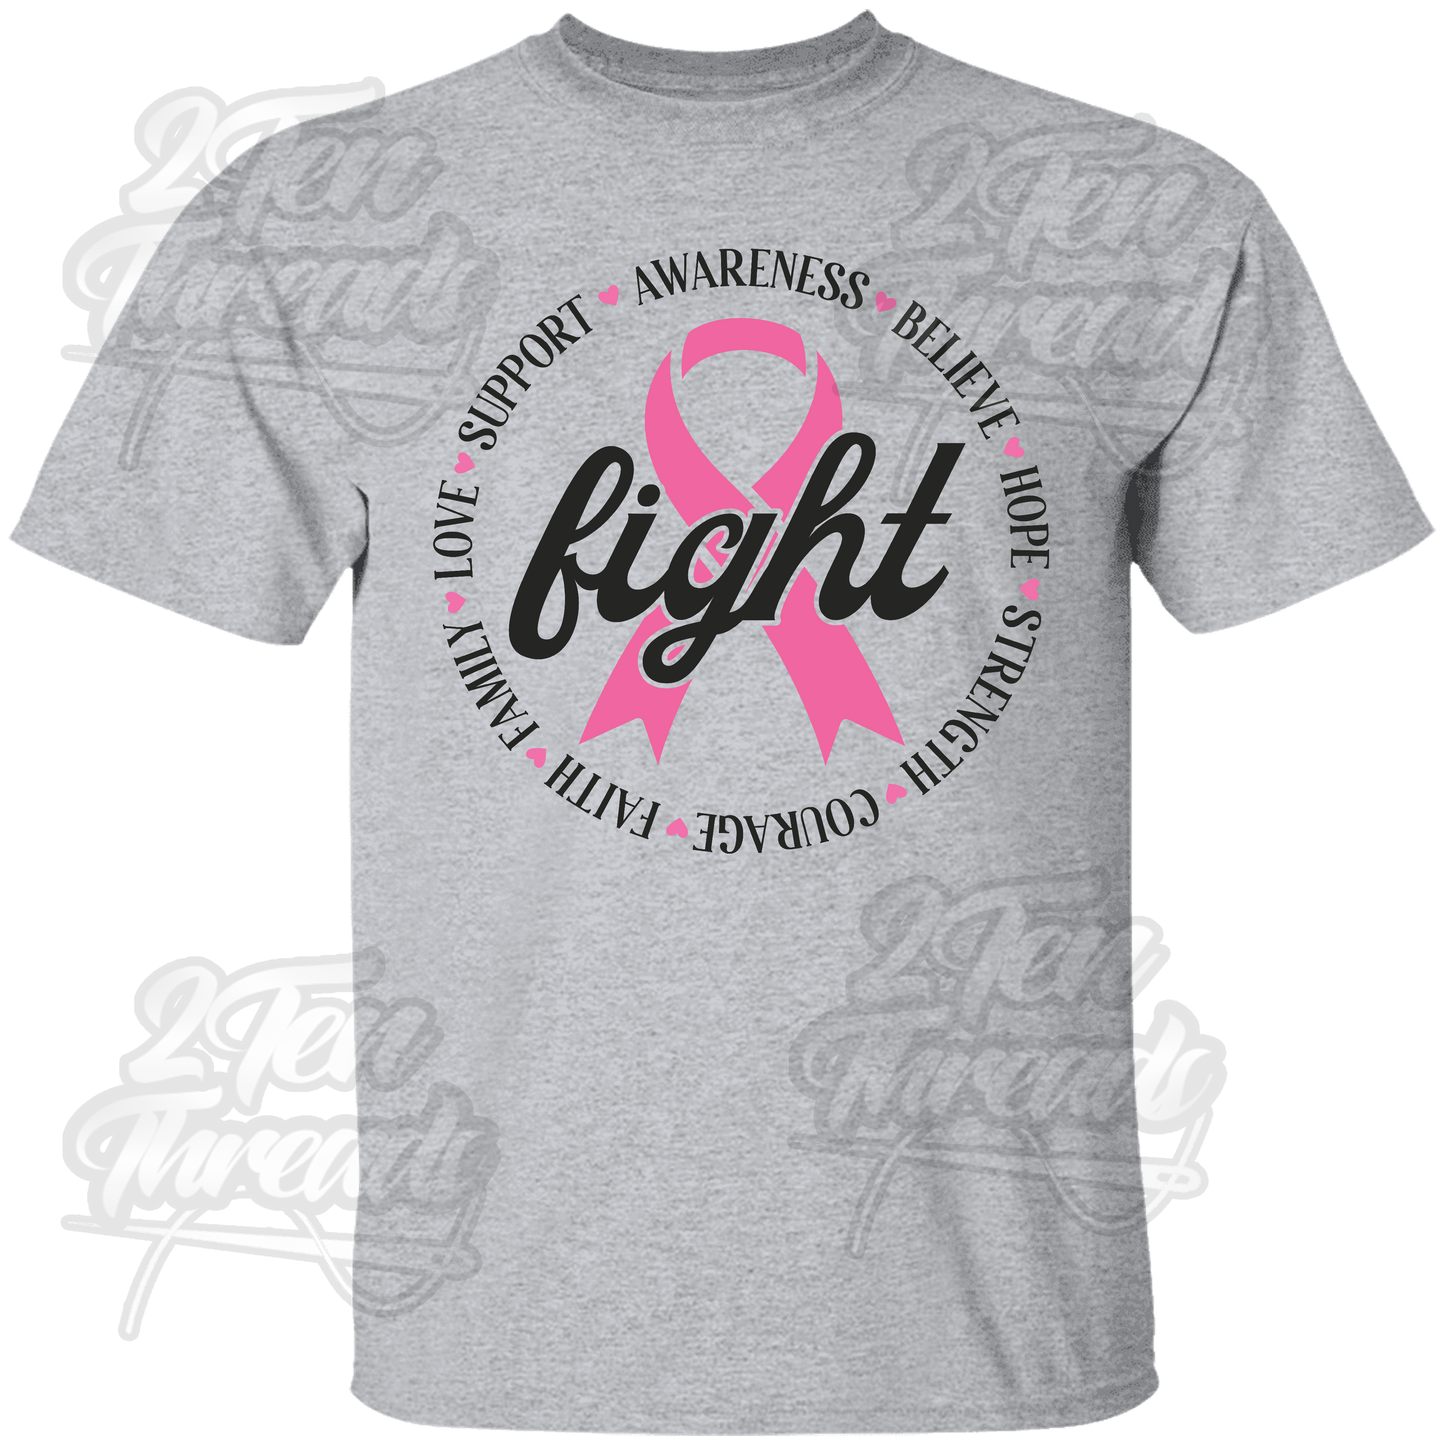 Fight Cancer Shirt